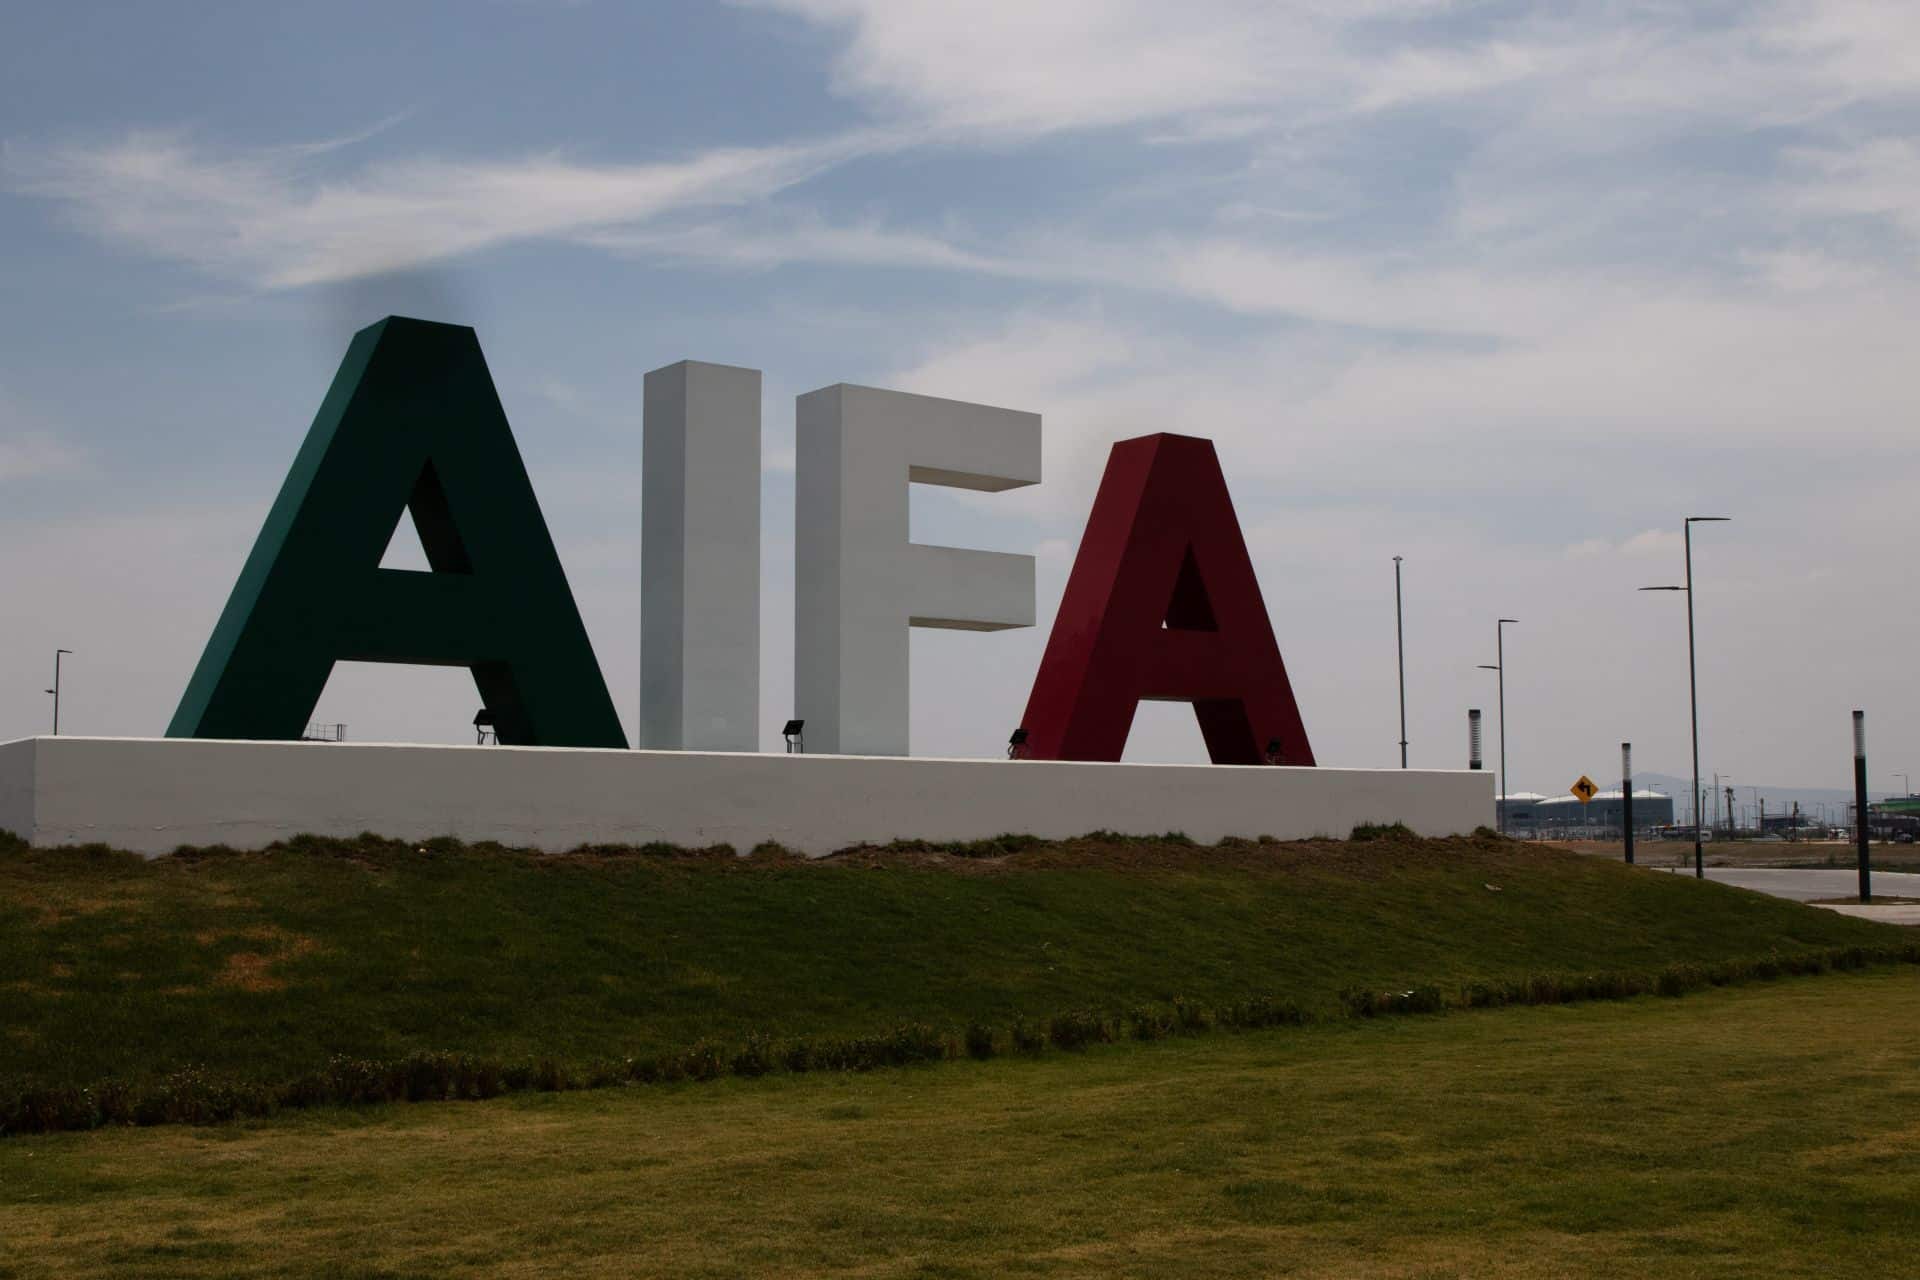 ¿¿Cuáles son las vialidades que conectan al AIFA?